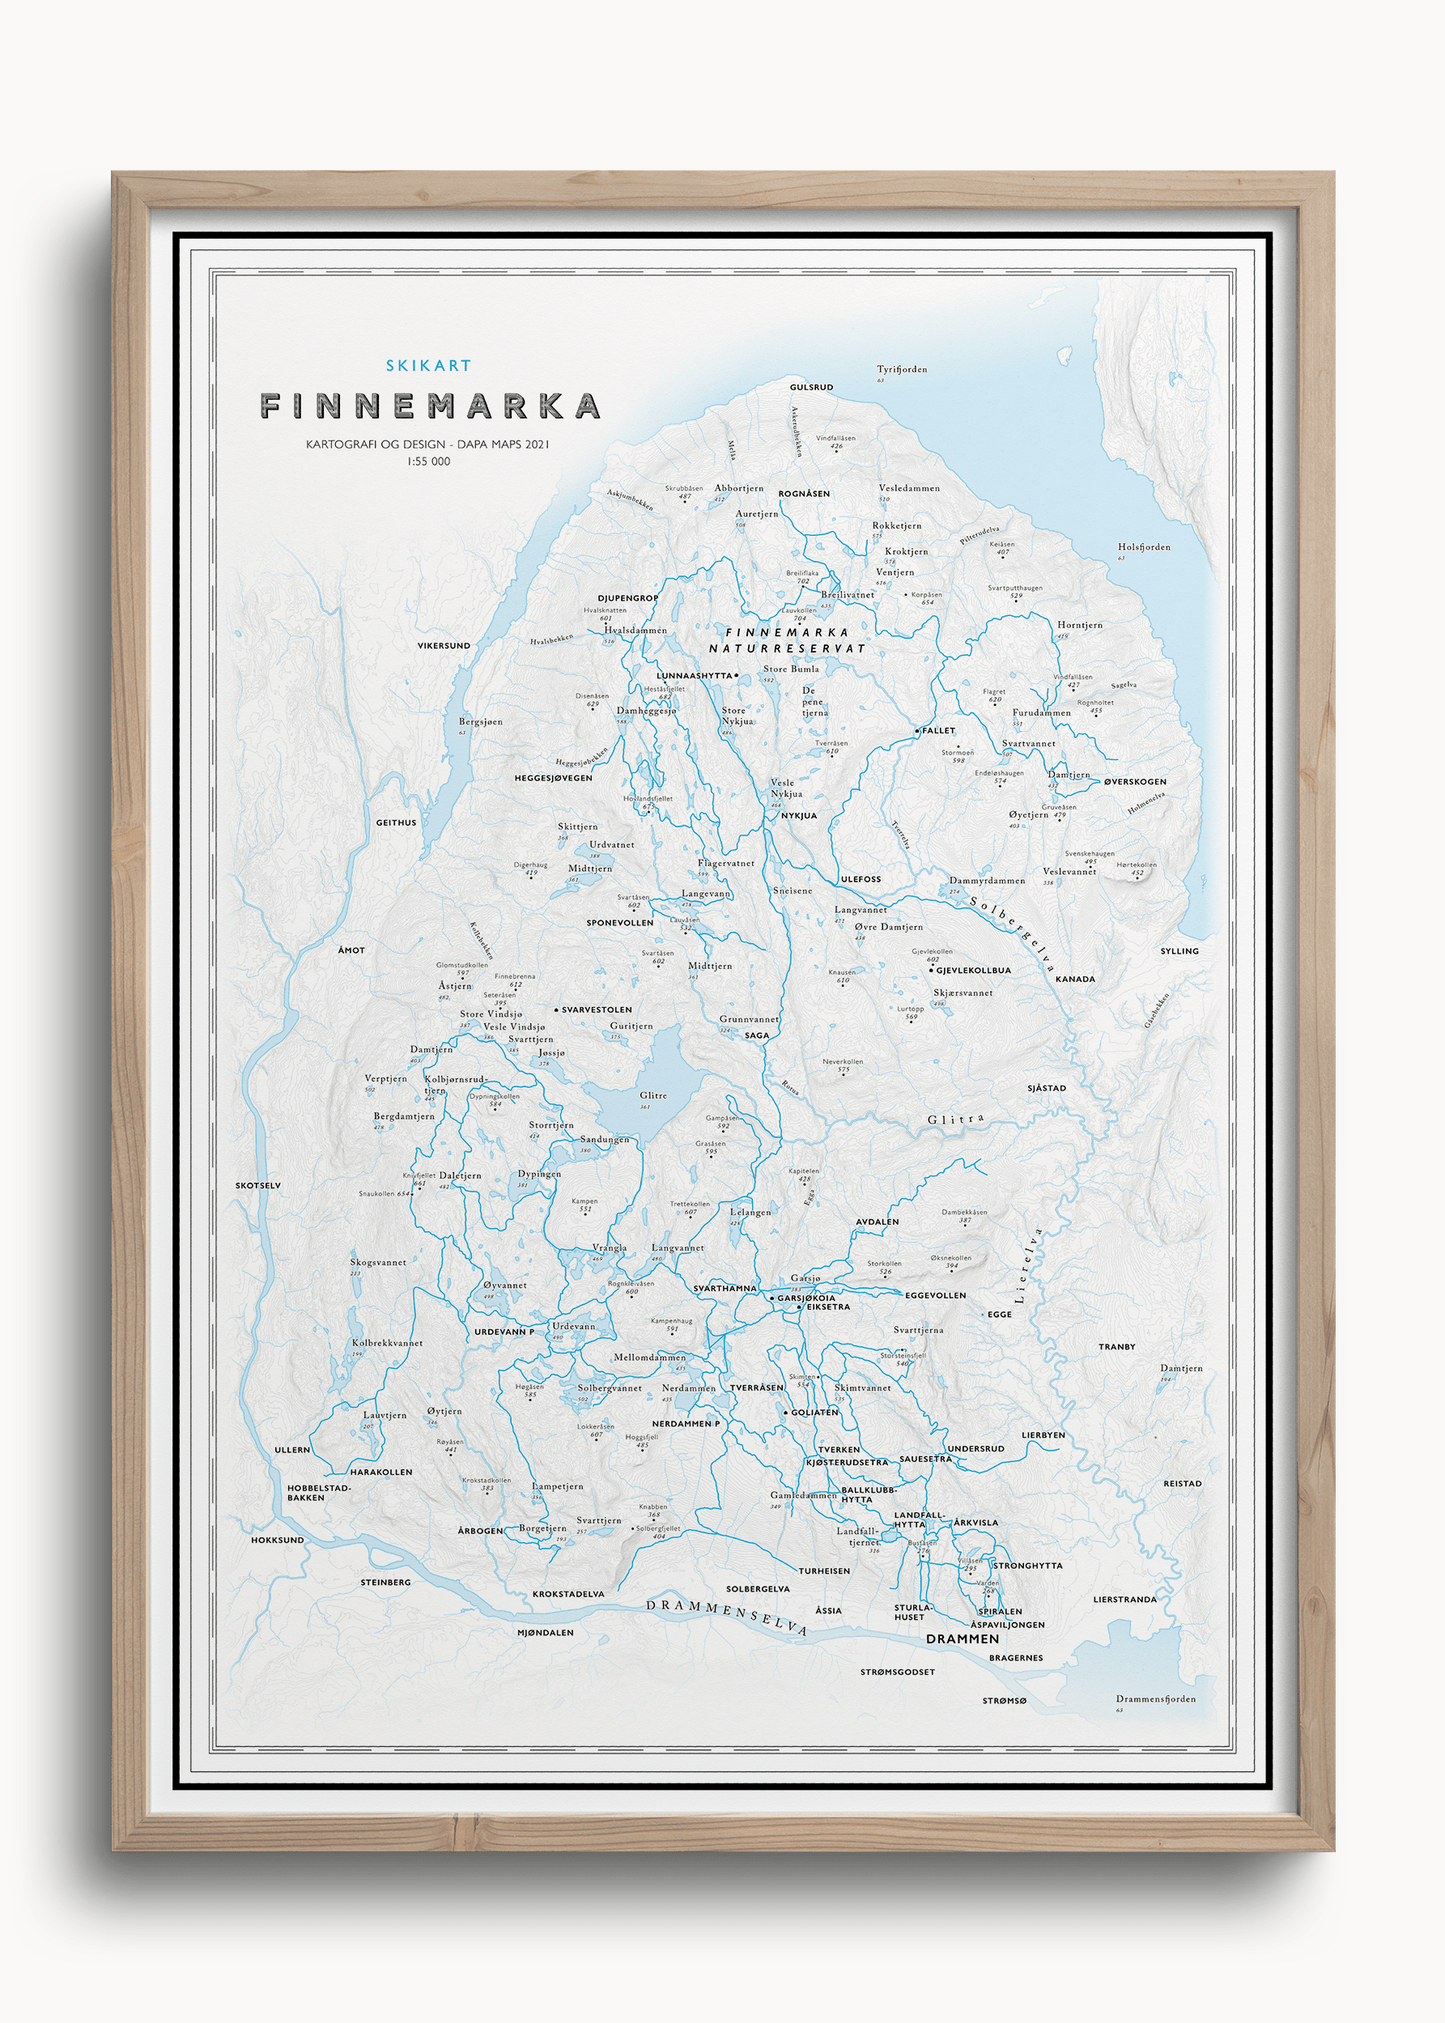 Skikart Finnemarka som viser Glitre, Eiksætra, Lier, Drammensjorden, Tverråsruden, 